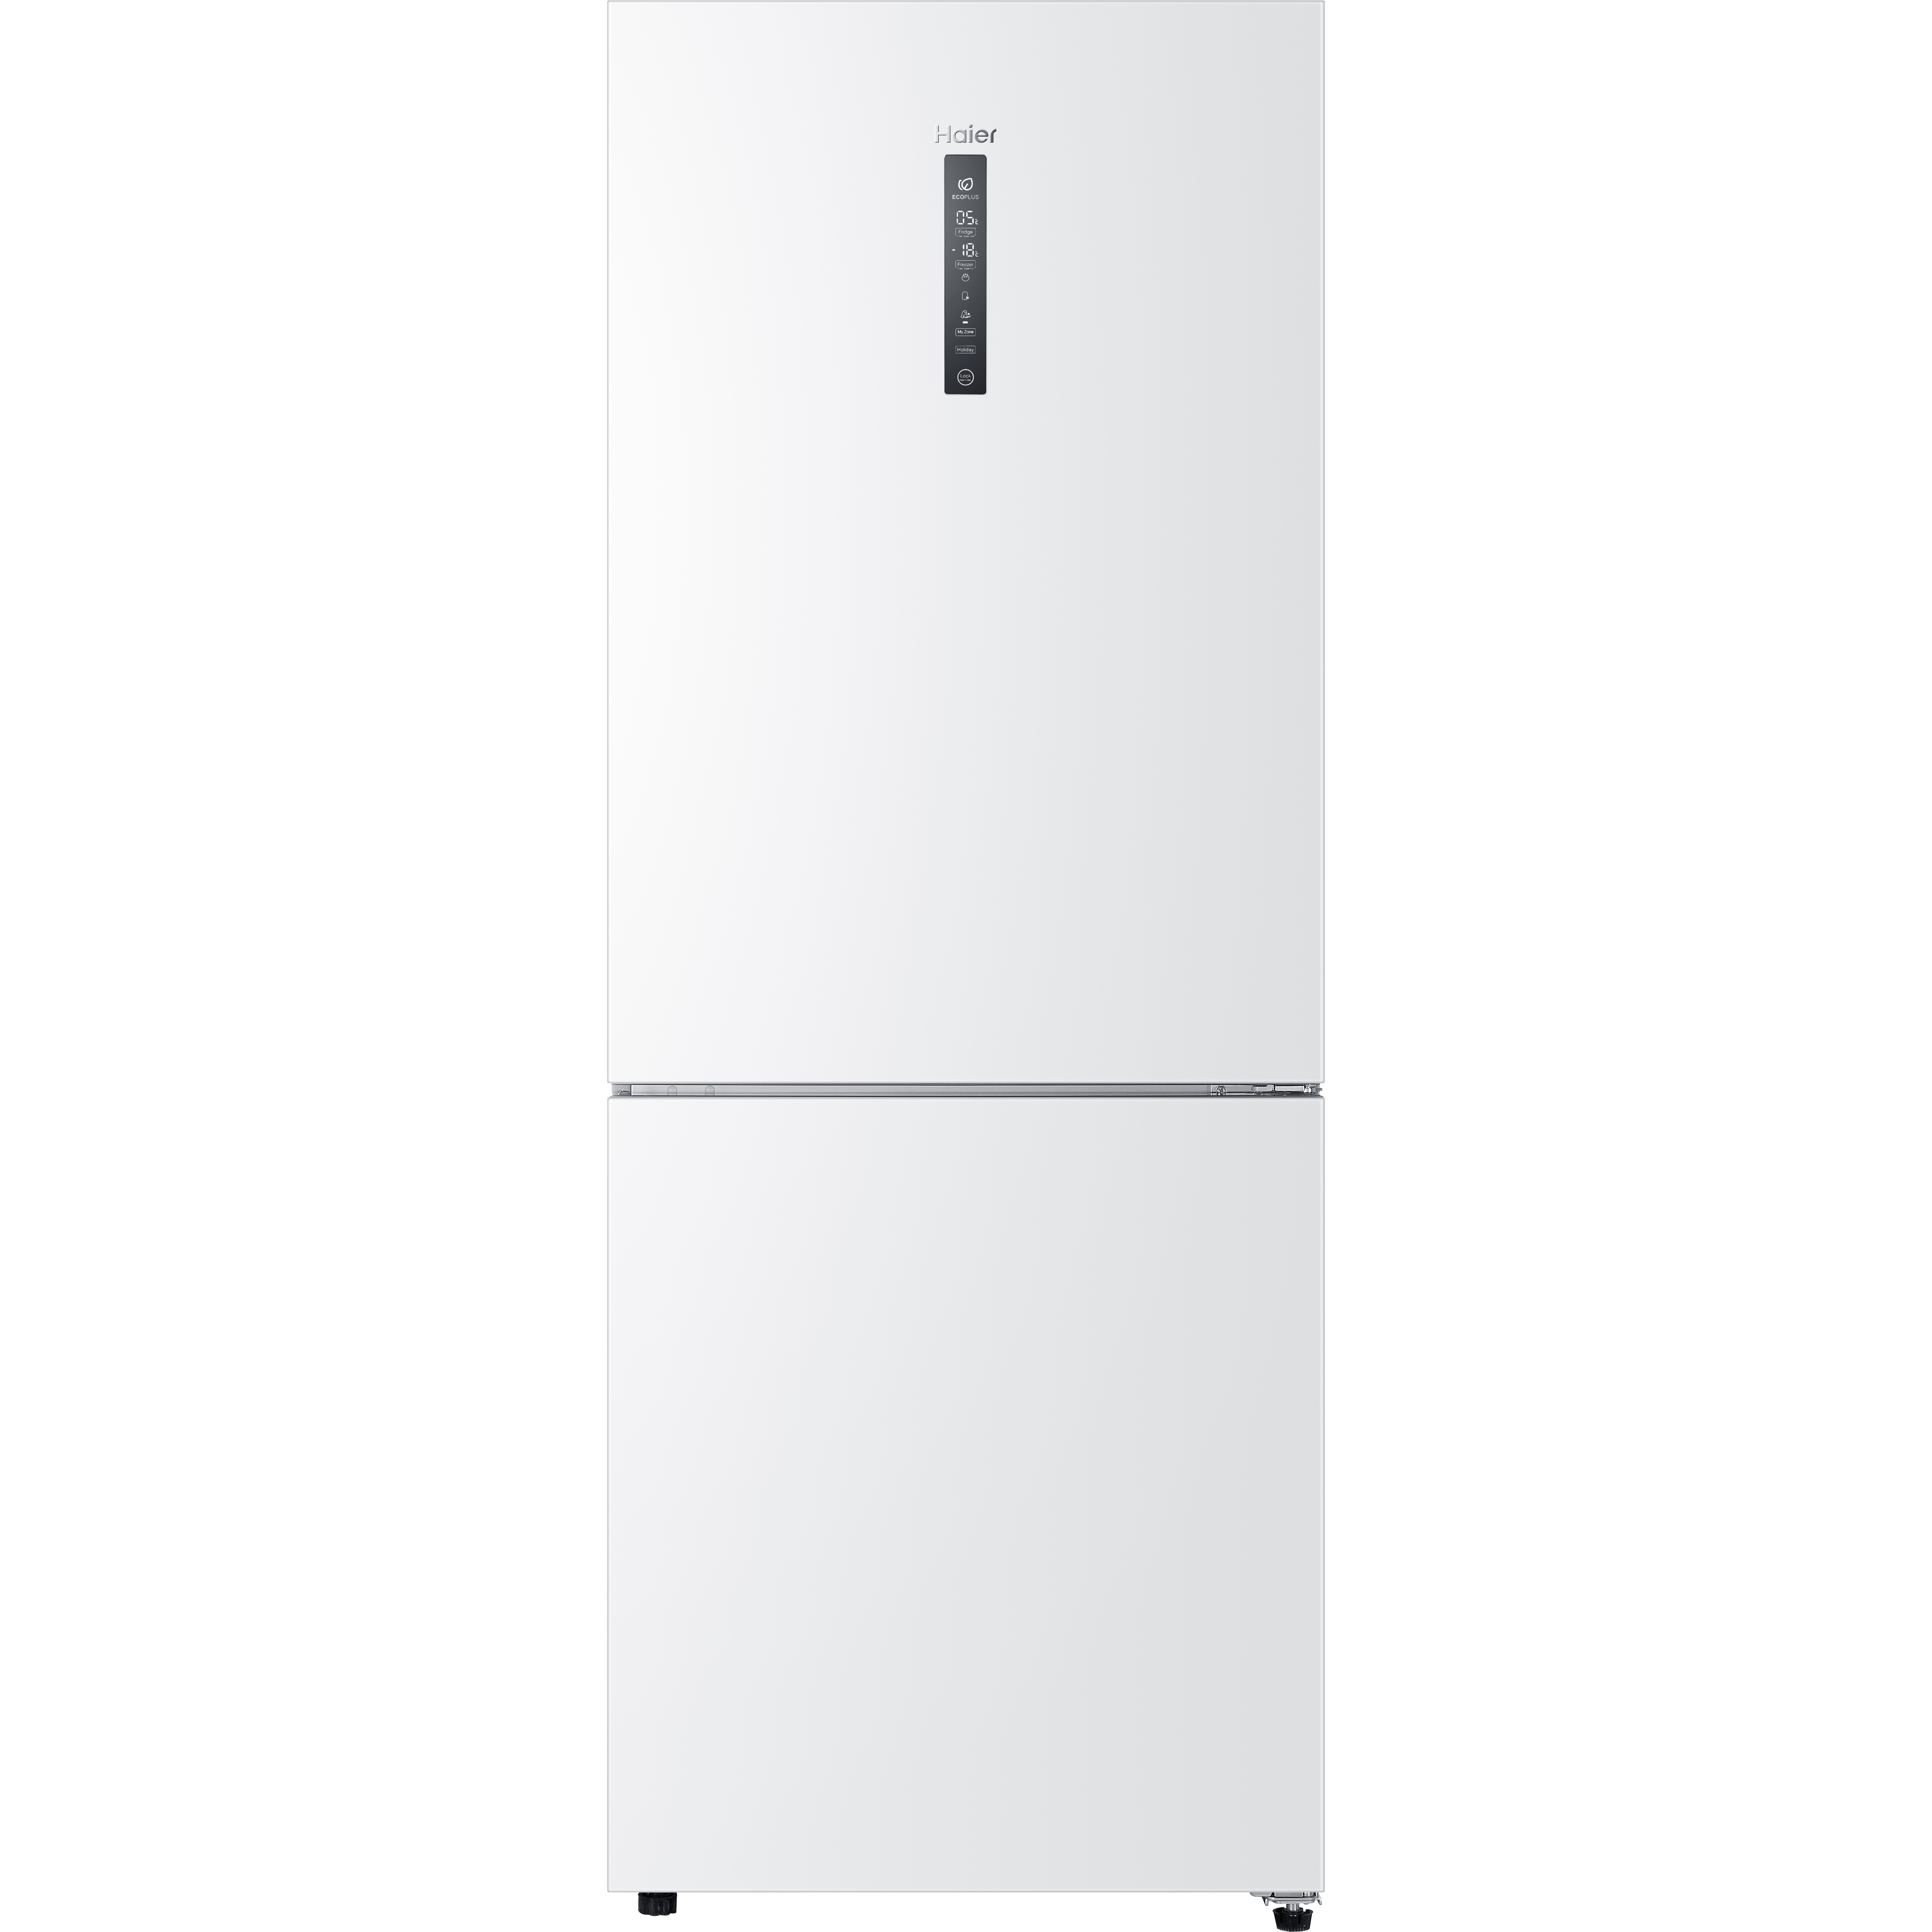 Холодильник Haier c4f744cwg. Холодильник Haier c4f744cwg, белый. Haier 744cwg холодильник. Холодильник Haier c4f640cwu1 белый.